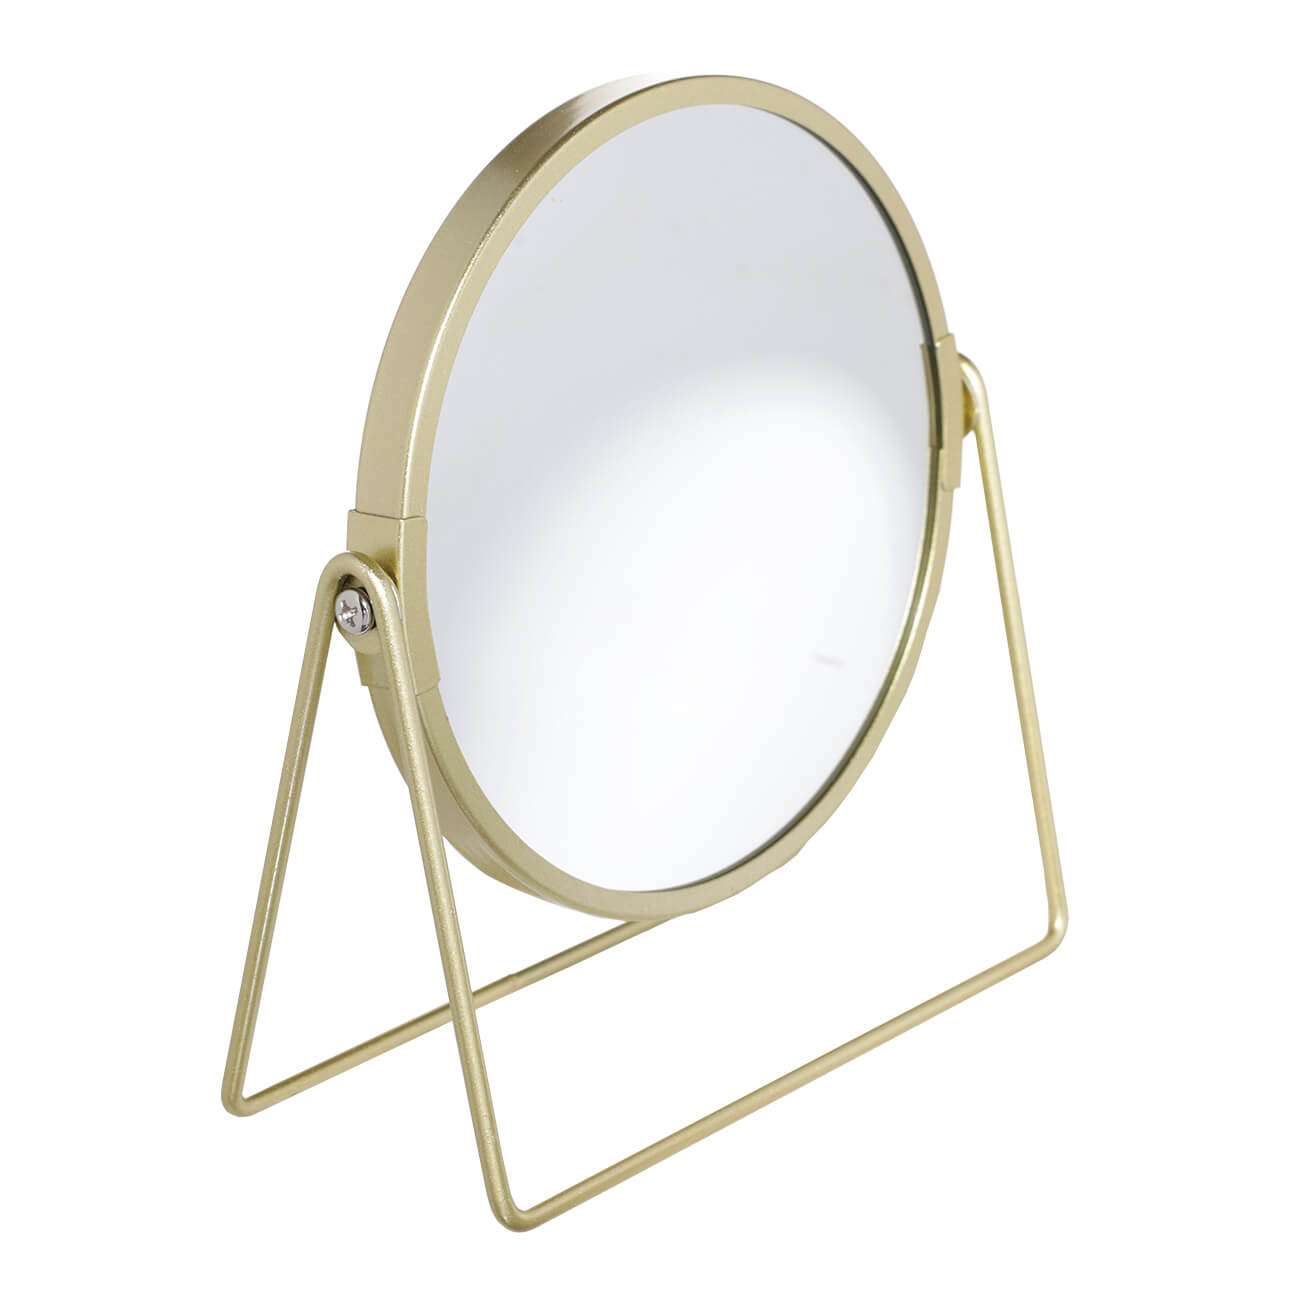 Зеркало настольное, 18 см, двустороннее, металл, круглое, золотистое, Freya зеркало настольное 20х17 см двустороннее металл круглое fantastic